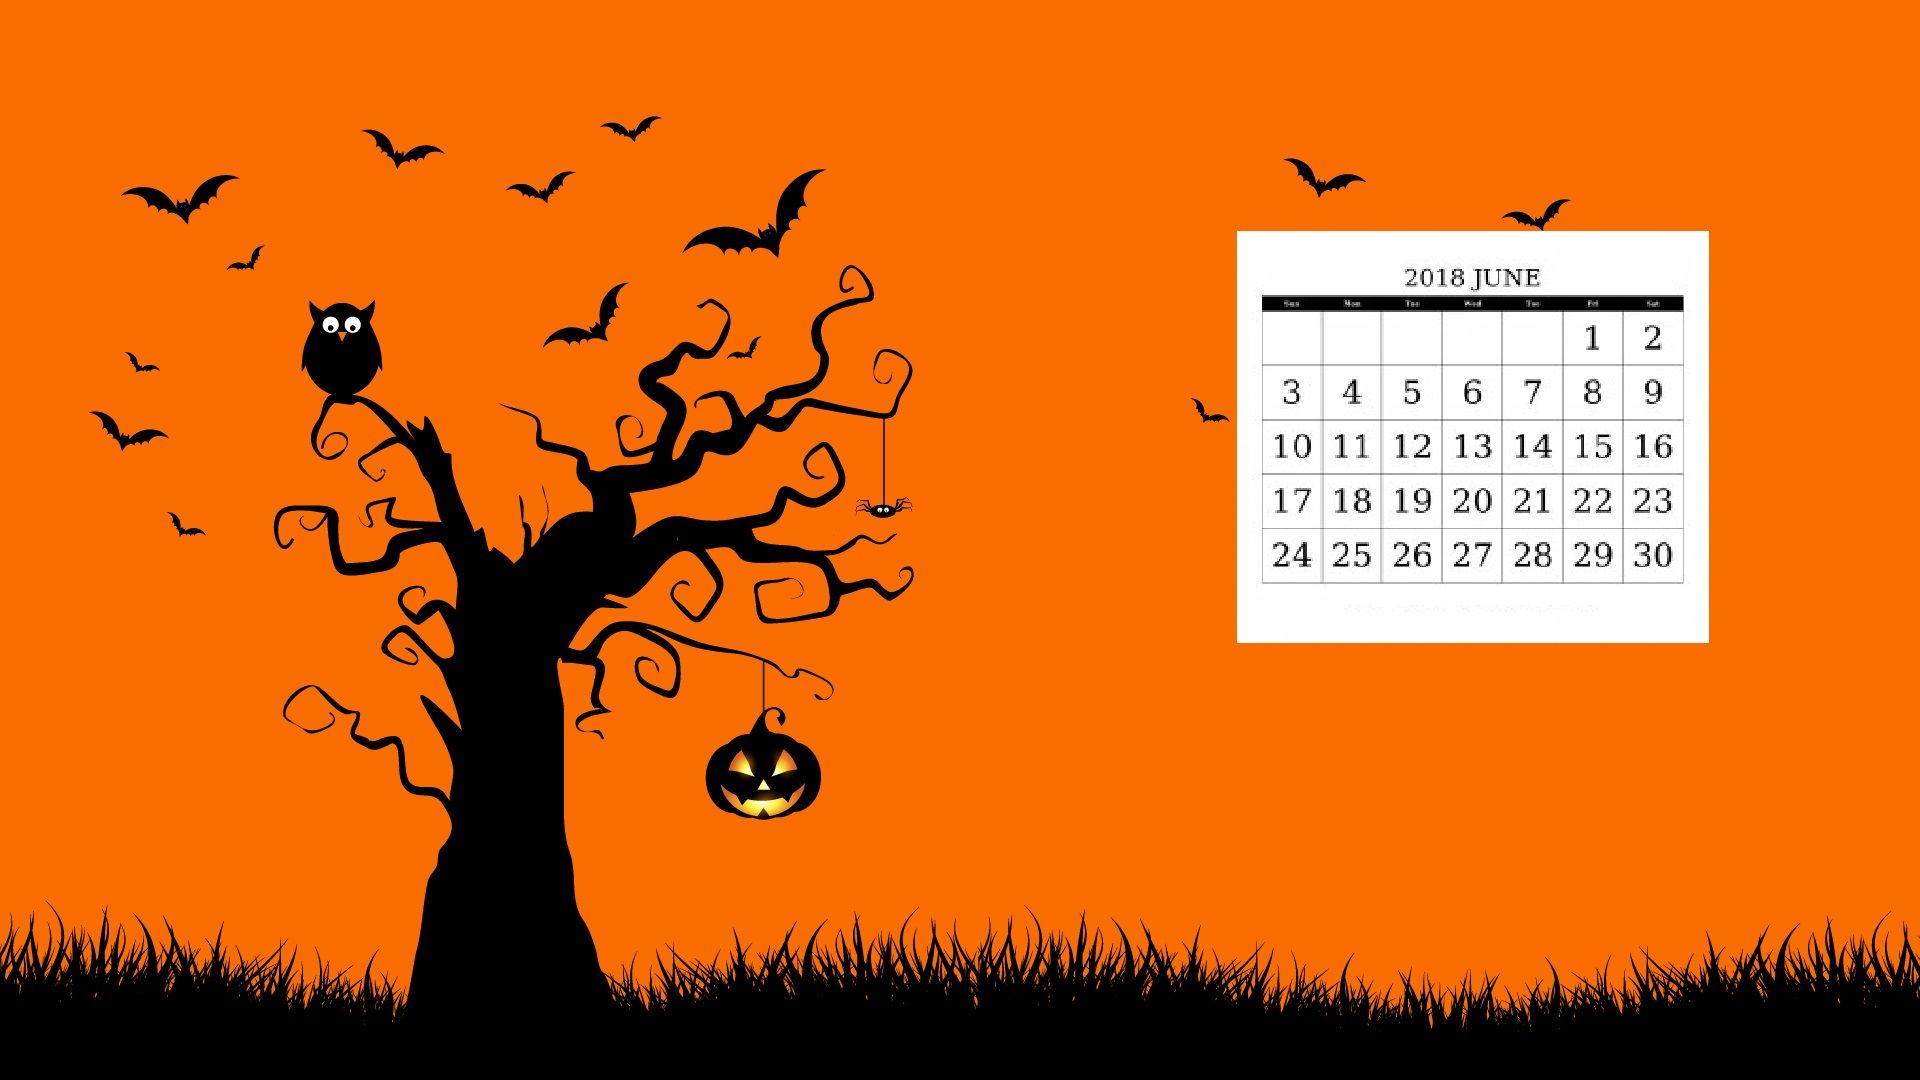 10 월 달력 벽지,주황색,나무,폰트,하늘,야생 동물